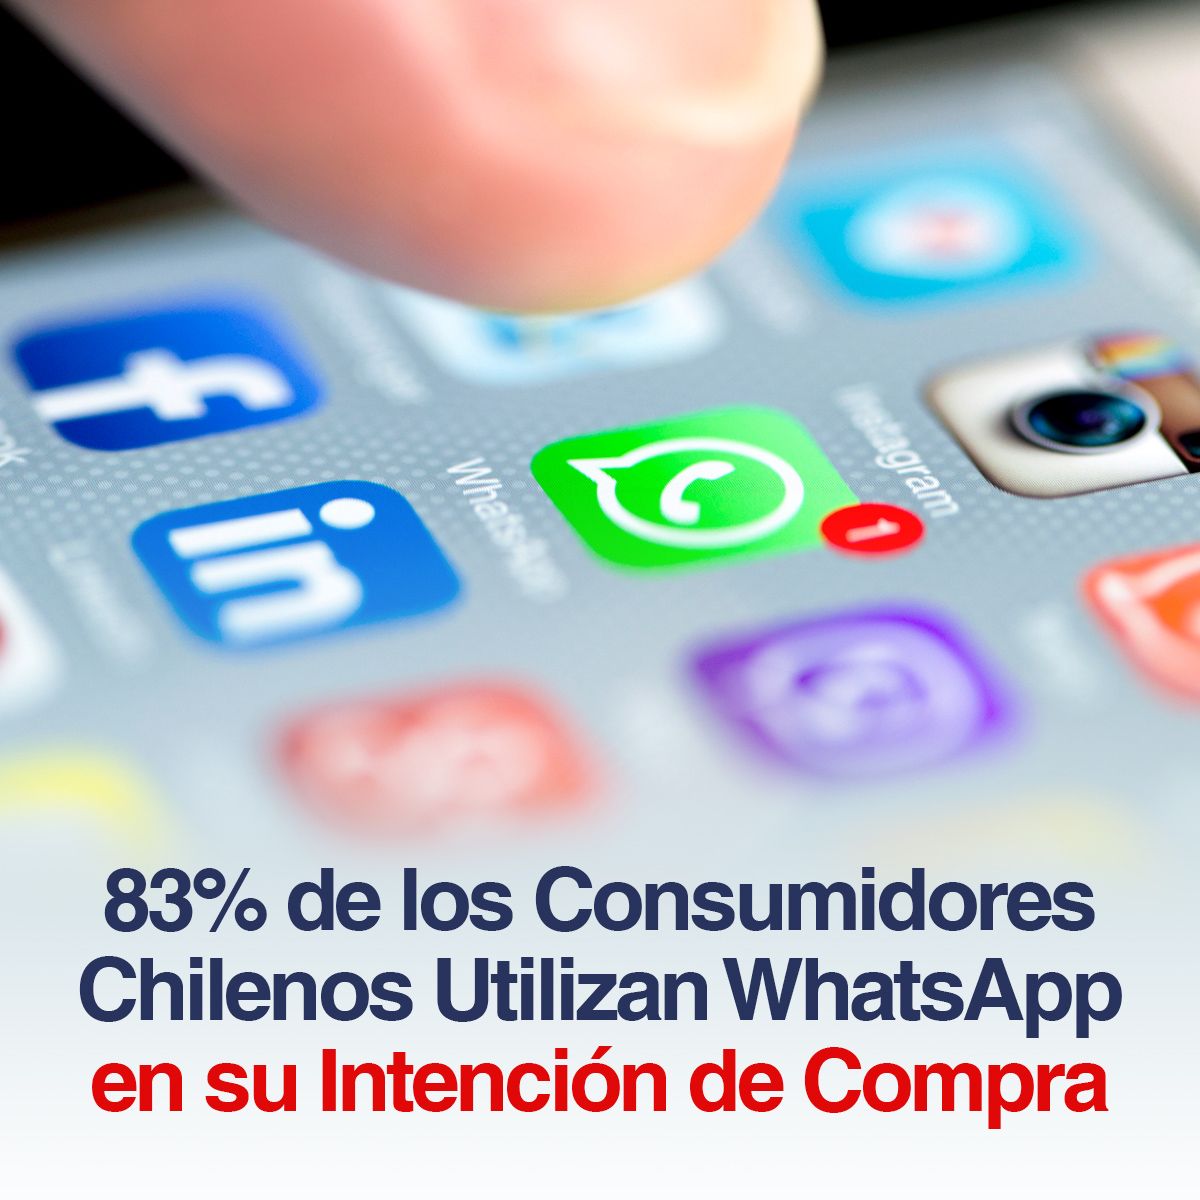 83% de los Consumidores Chilenos Utilizan WhatsApp en su Intención de Compra